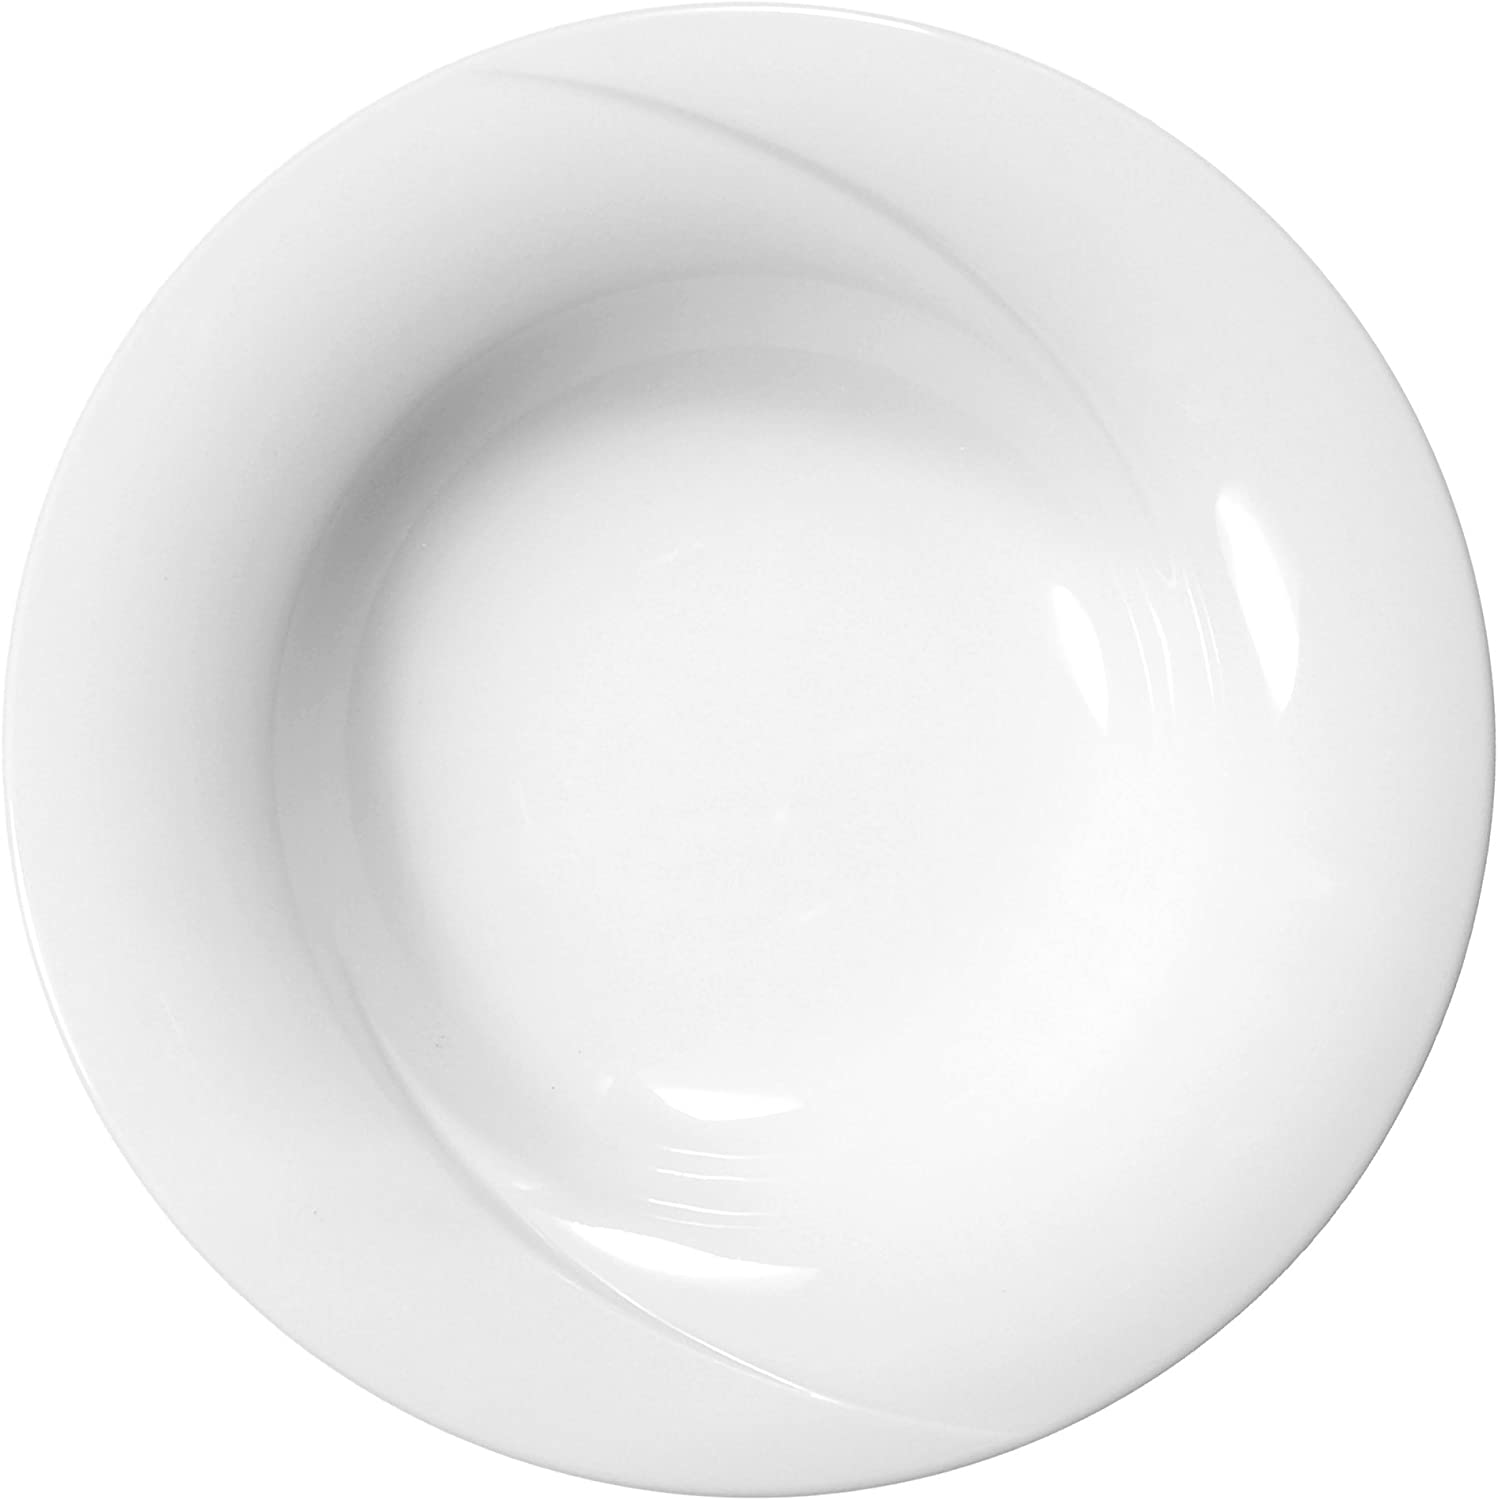 Pasta Plate 26.8 cm Laguna White Universal 00006 by Seltmann Weiden